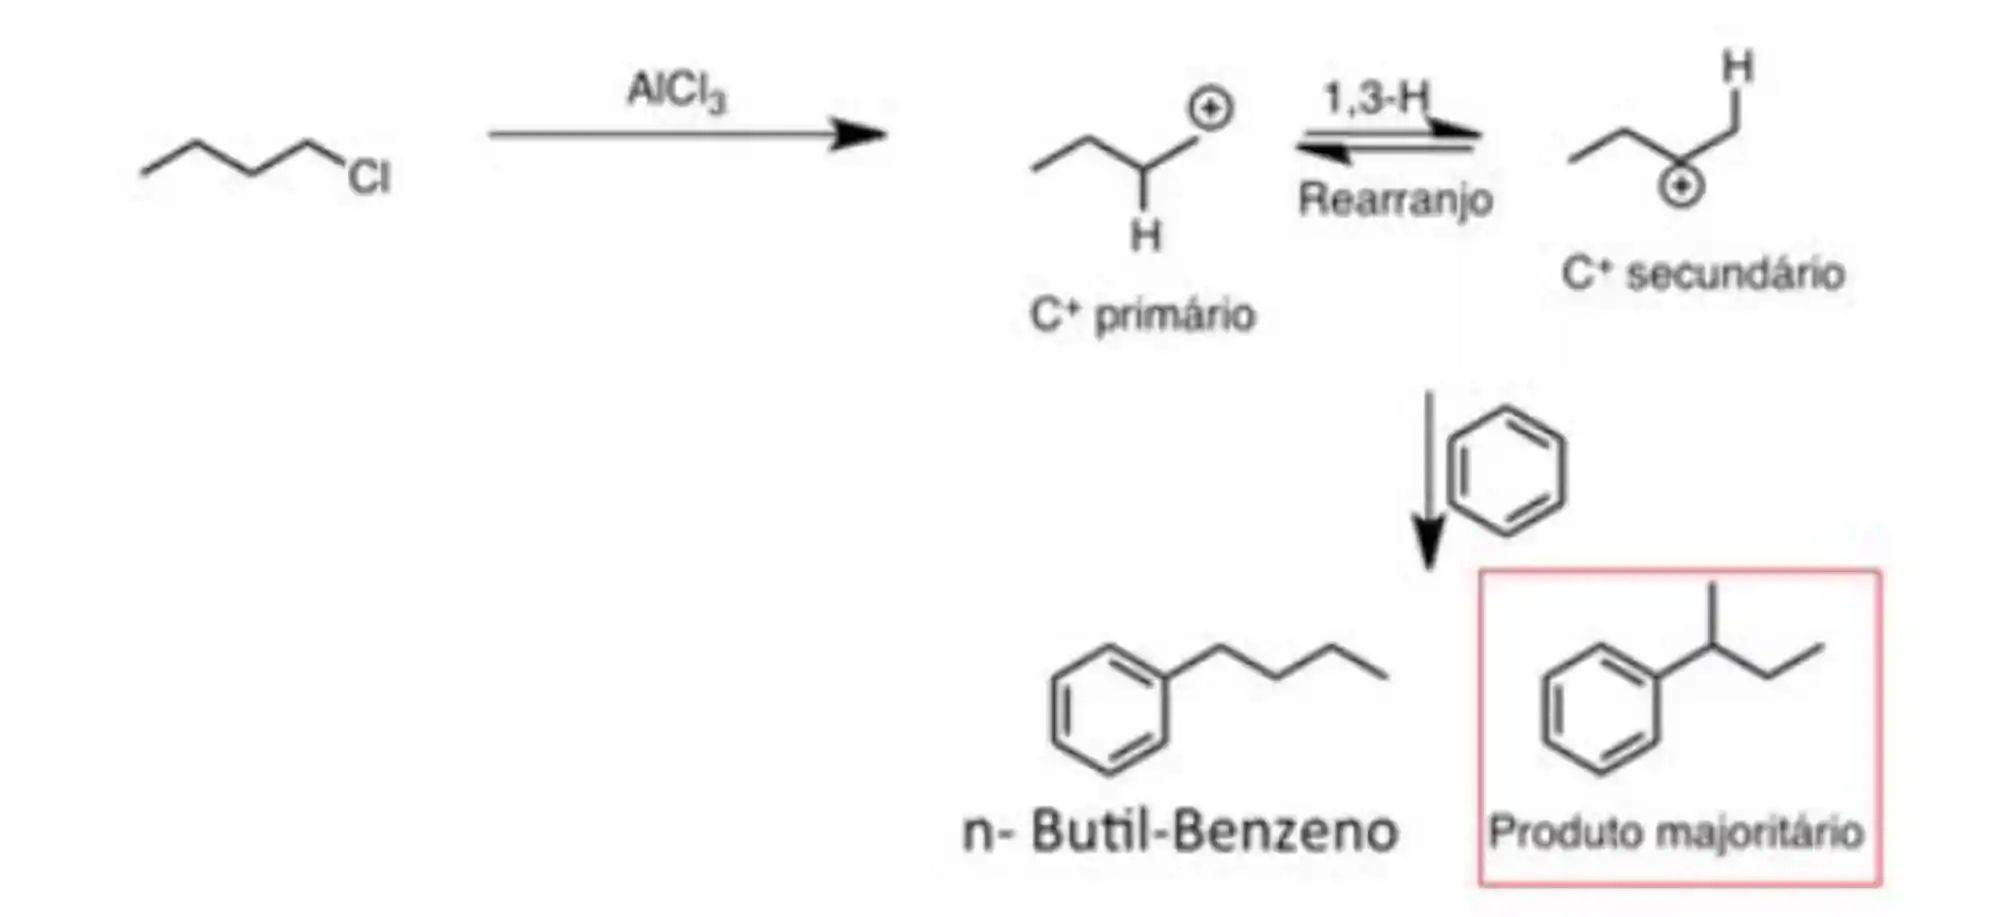 Síntese do n-Butil-Benzeno por alquilação de Friedel-Crafts.